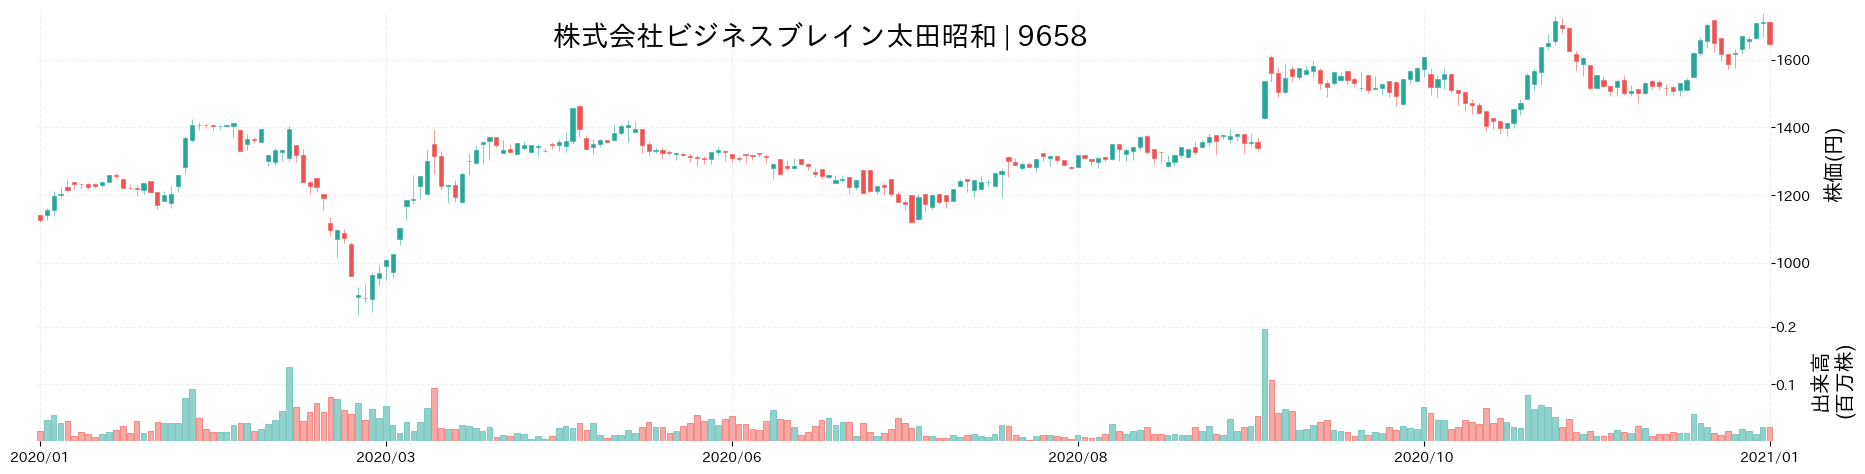 ビジネスブレイン太田昭和の株価推移(2020)